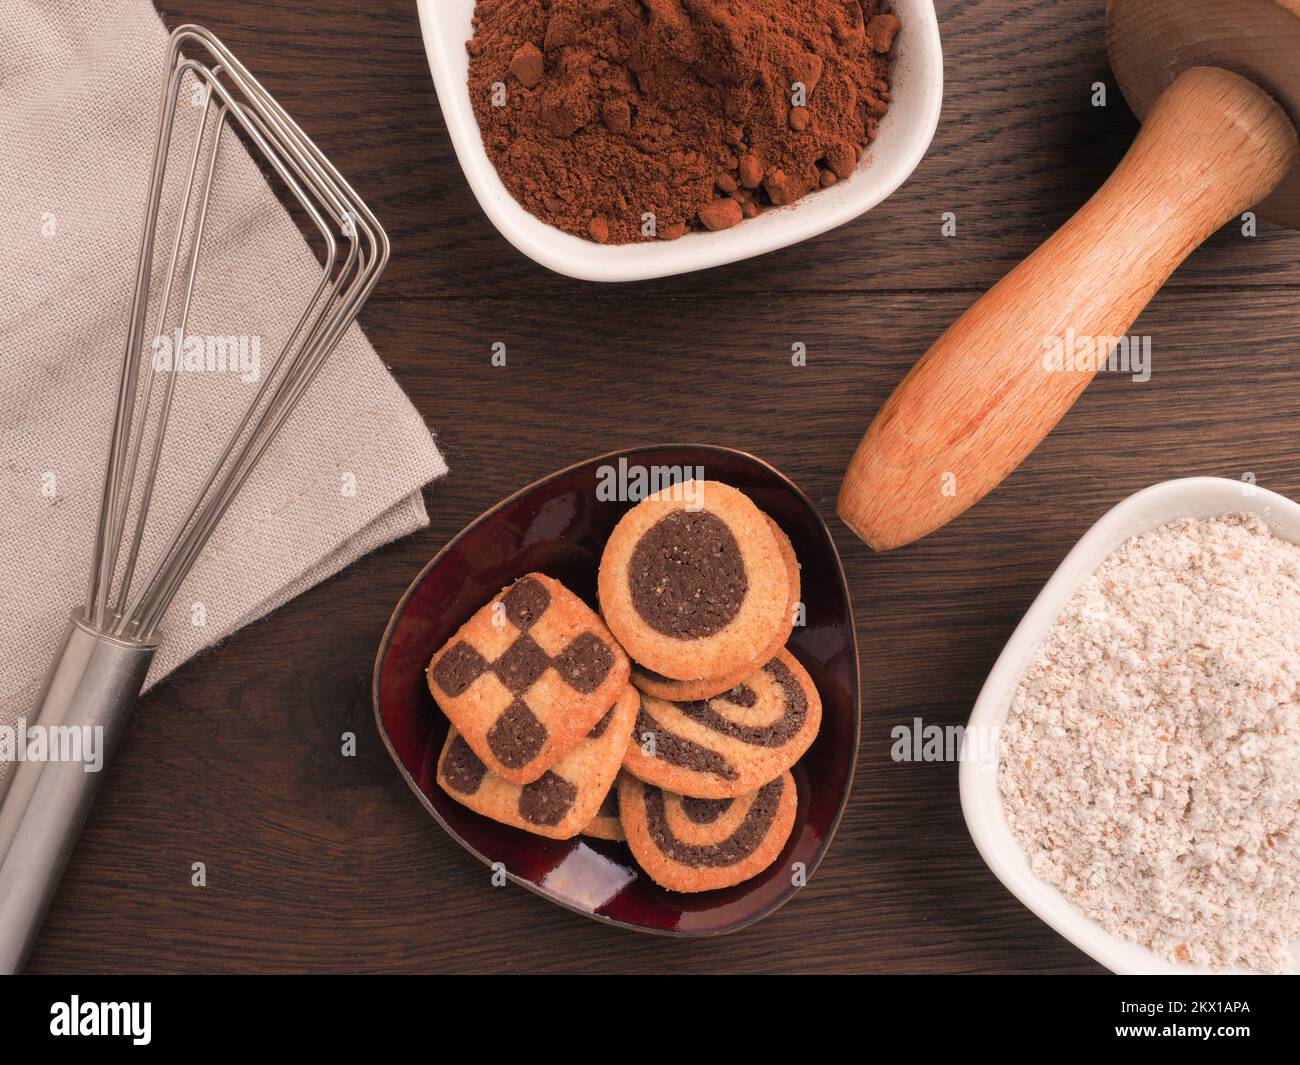 Biscuits noirs et blancs sur une table de cuisine en bois avec des ustensiles de cuisine Banque D'Images